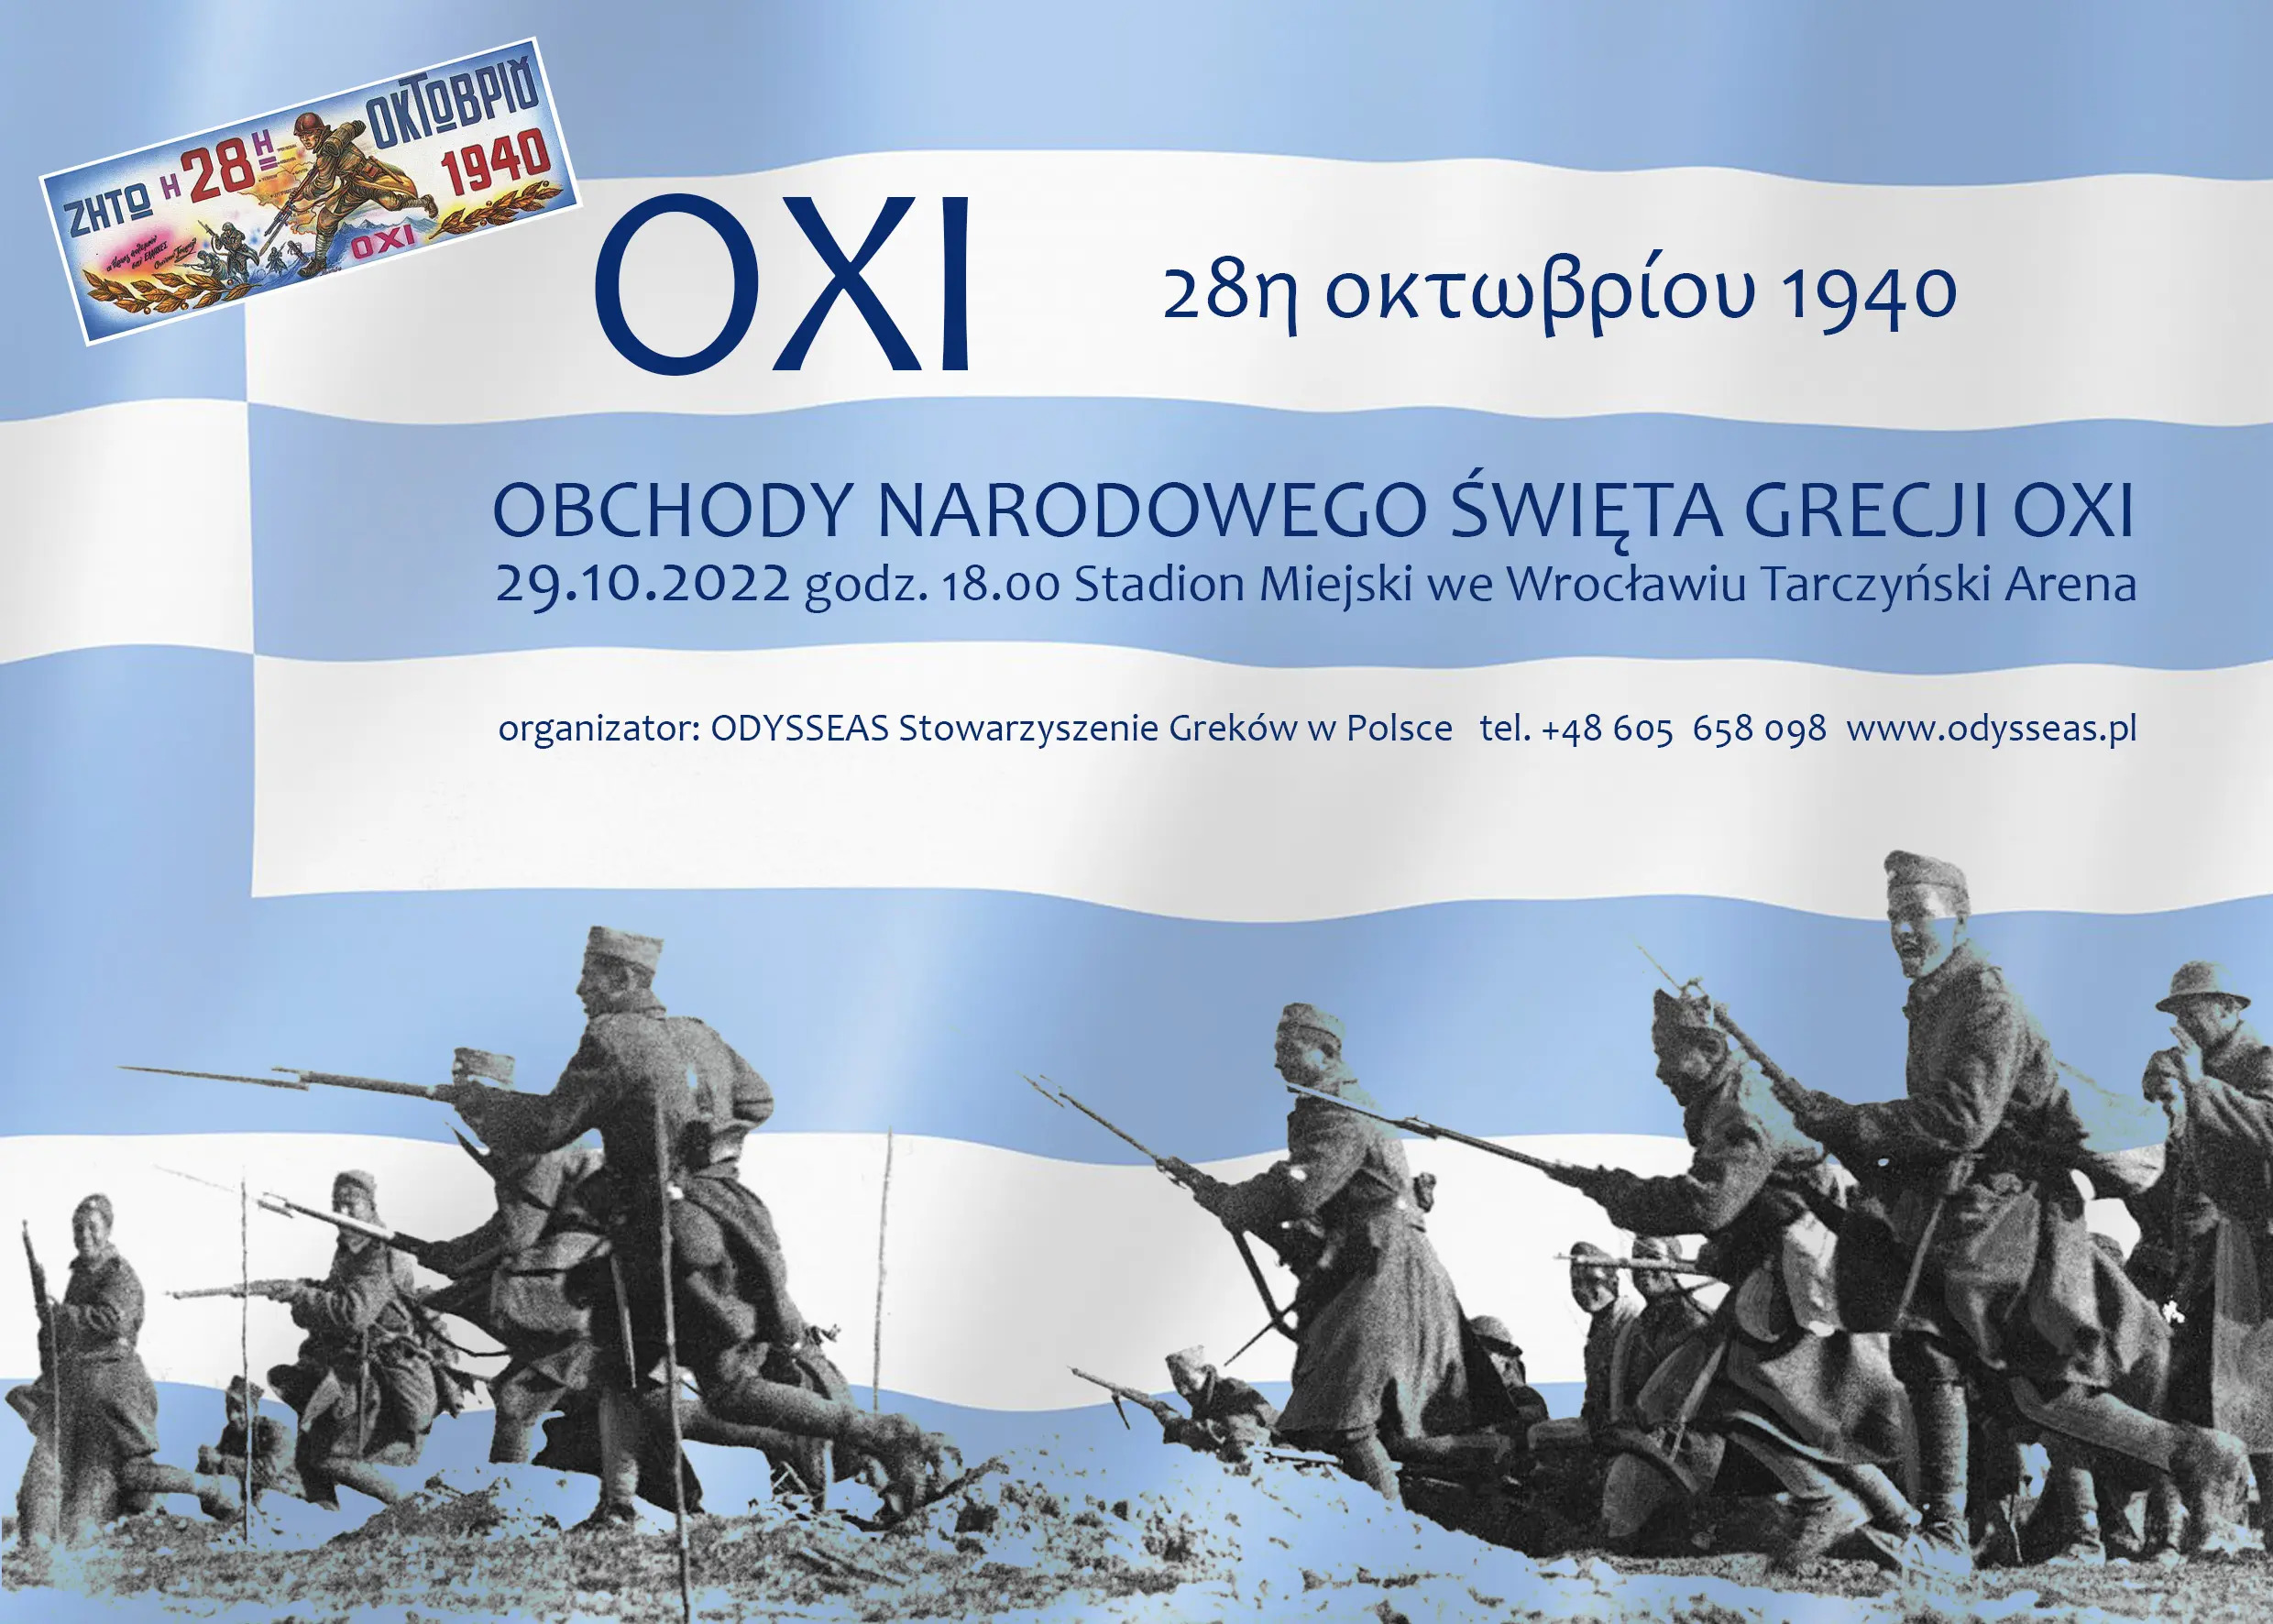 Narodowe Święto Grecji OXI